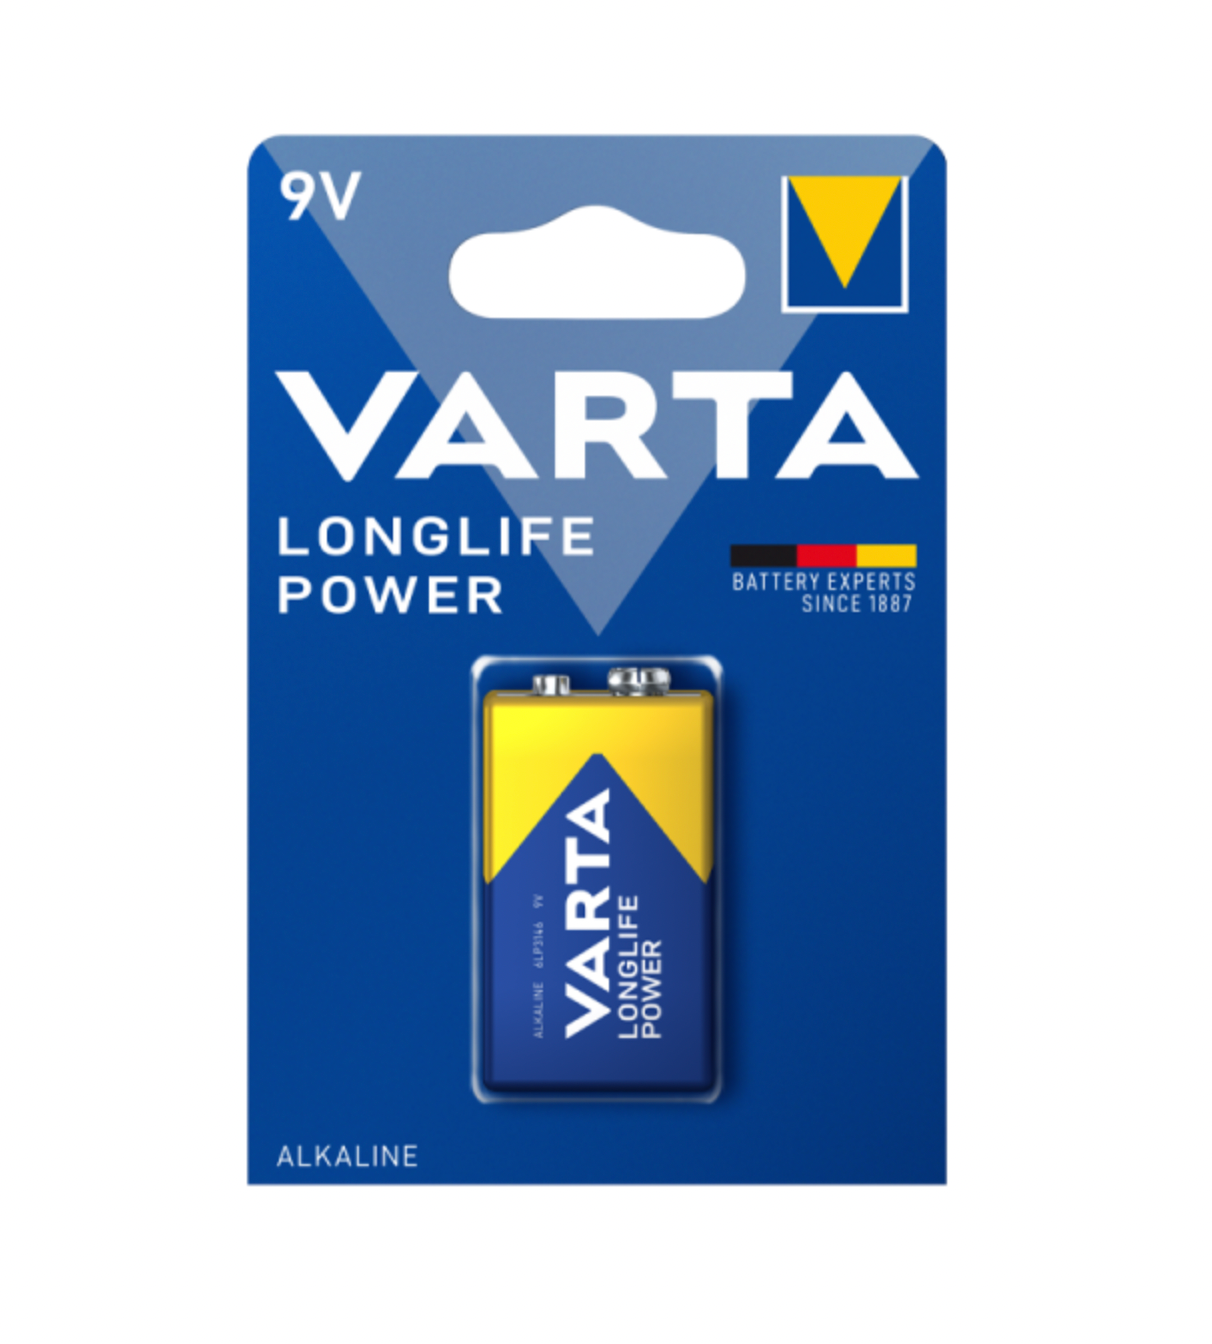 Варта / Varta - Батарейки Longlife Power Alkaline High Energy E-Block 9V 6LP3146 1 шт